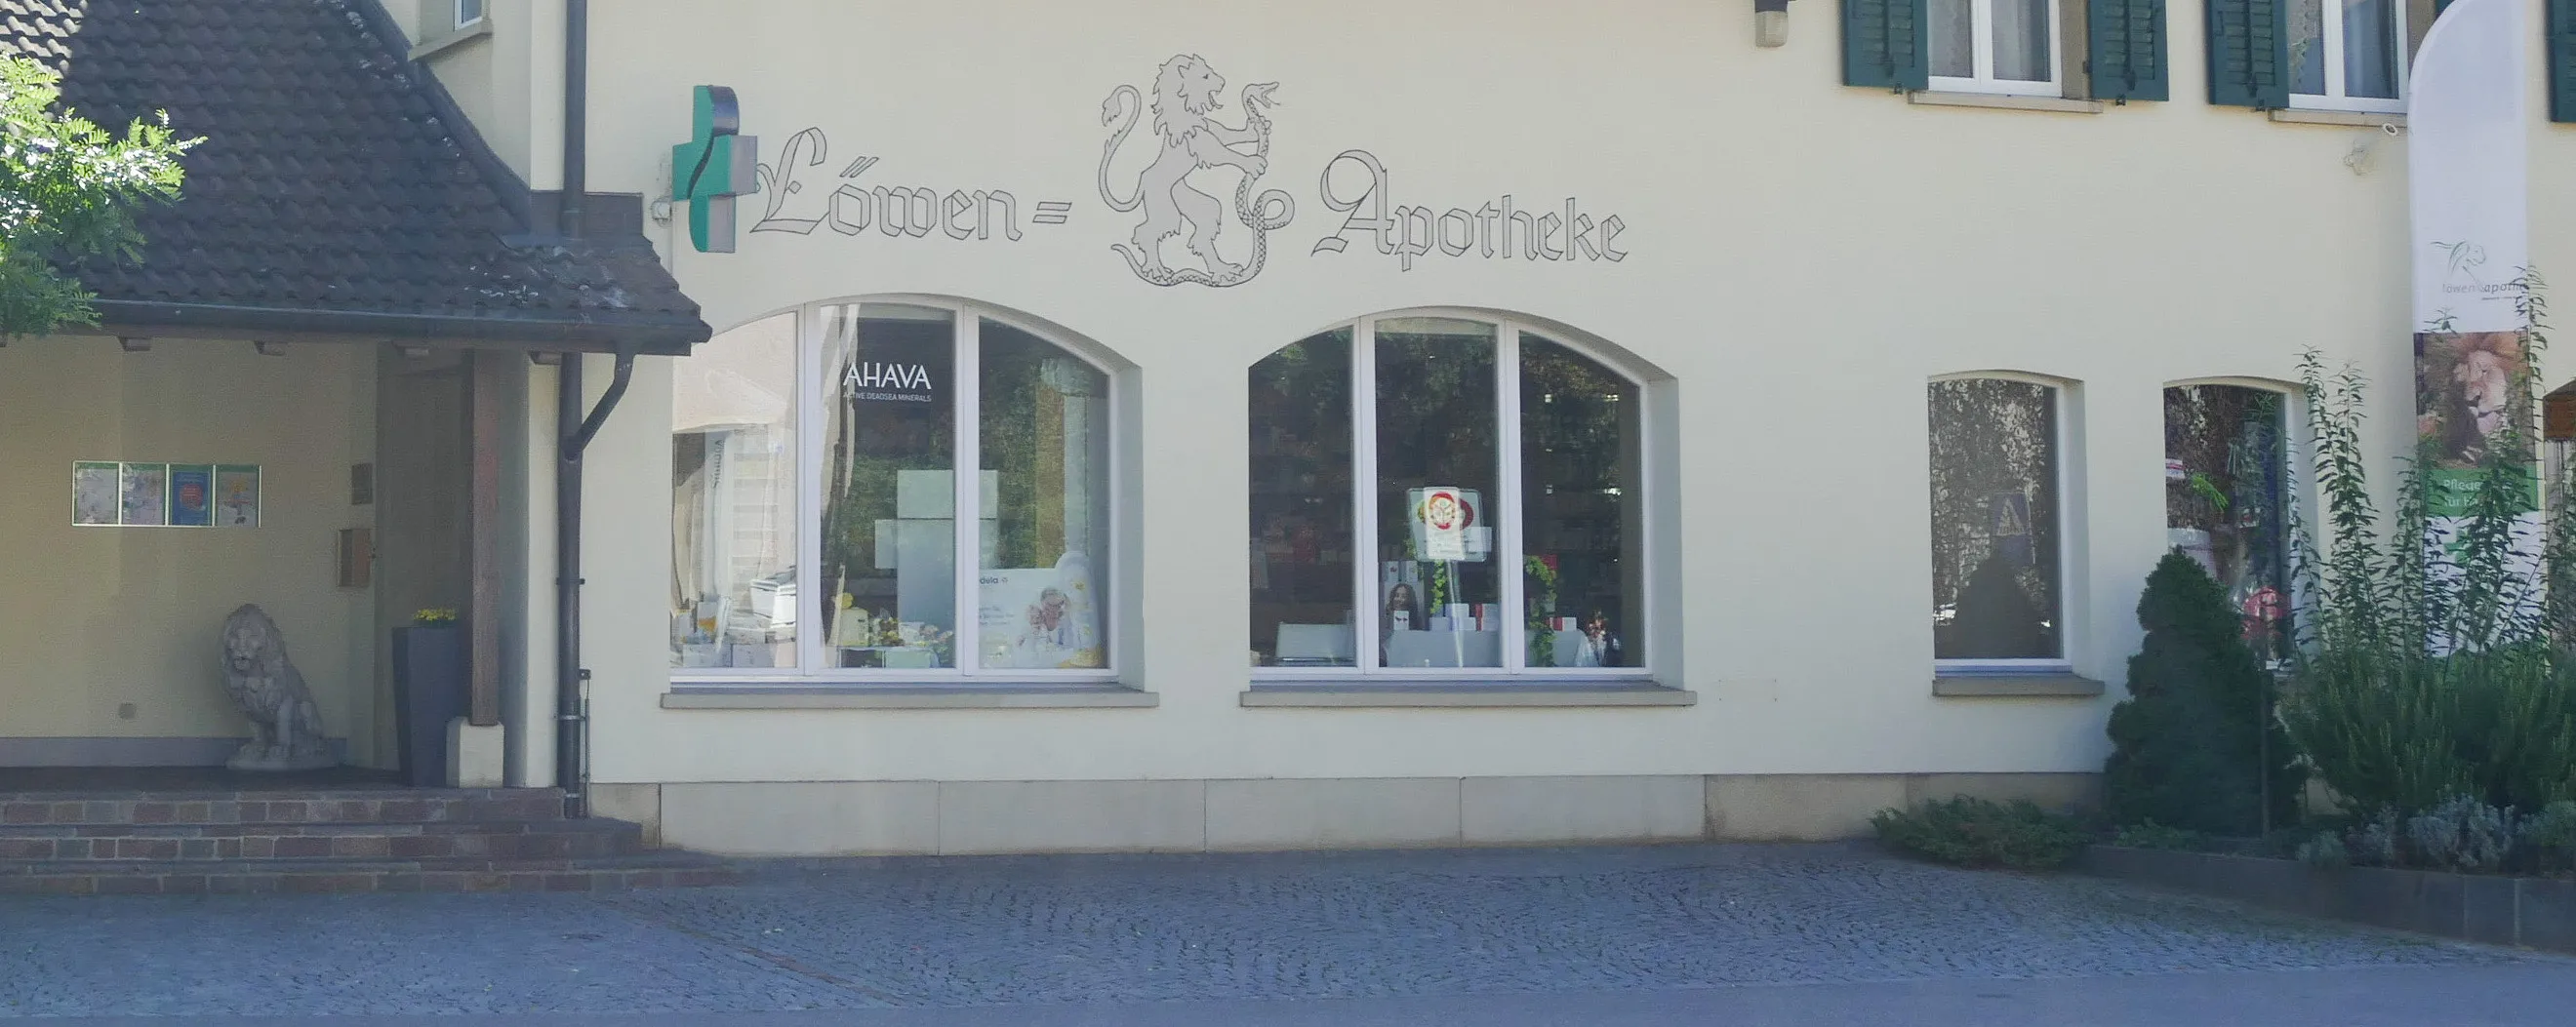 Löwen-Apotheke Frick AG